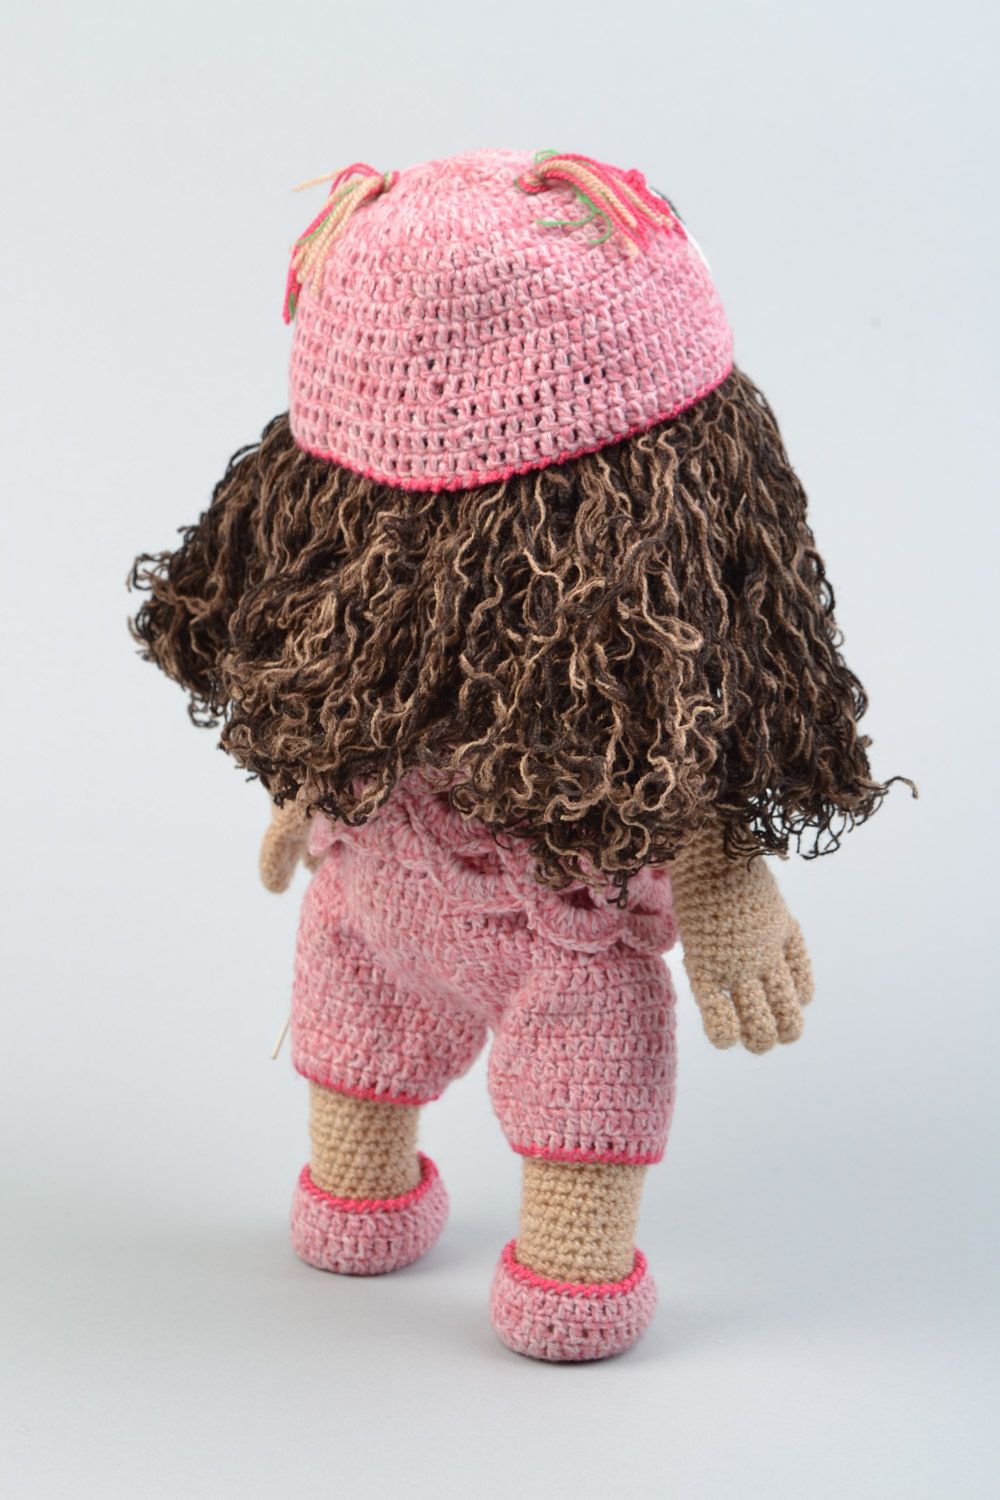 Handmade soft crochet toy girl doll for children photo 5